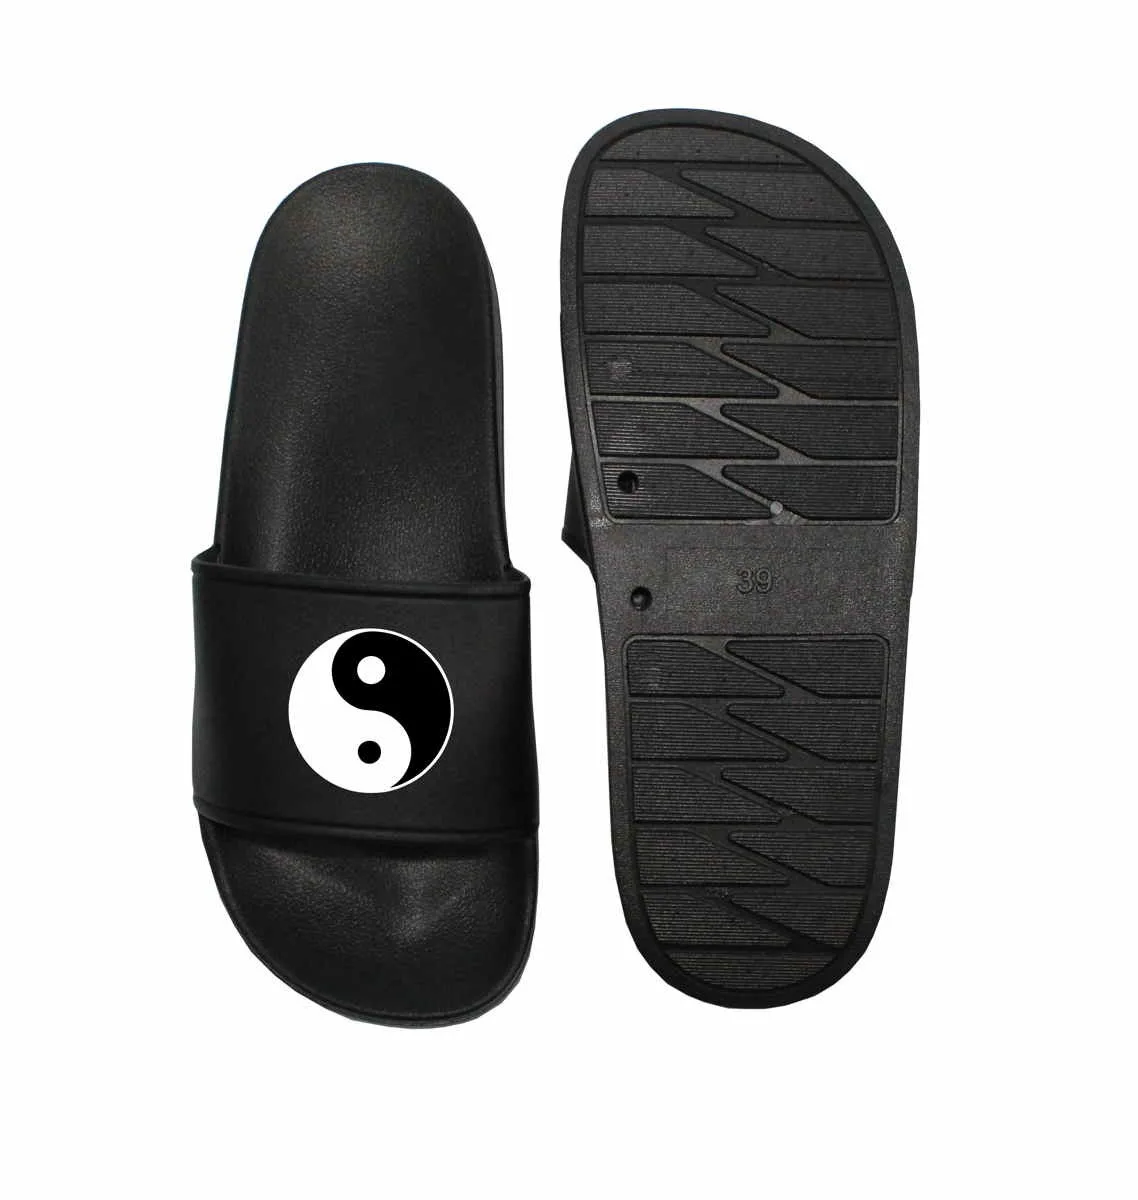 Chaussures de bain Ying Yang noir